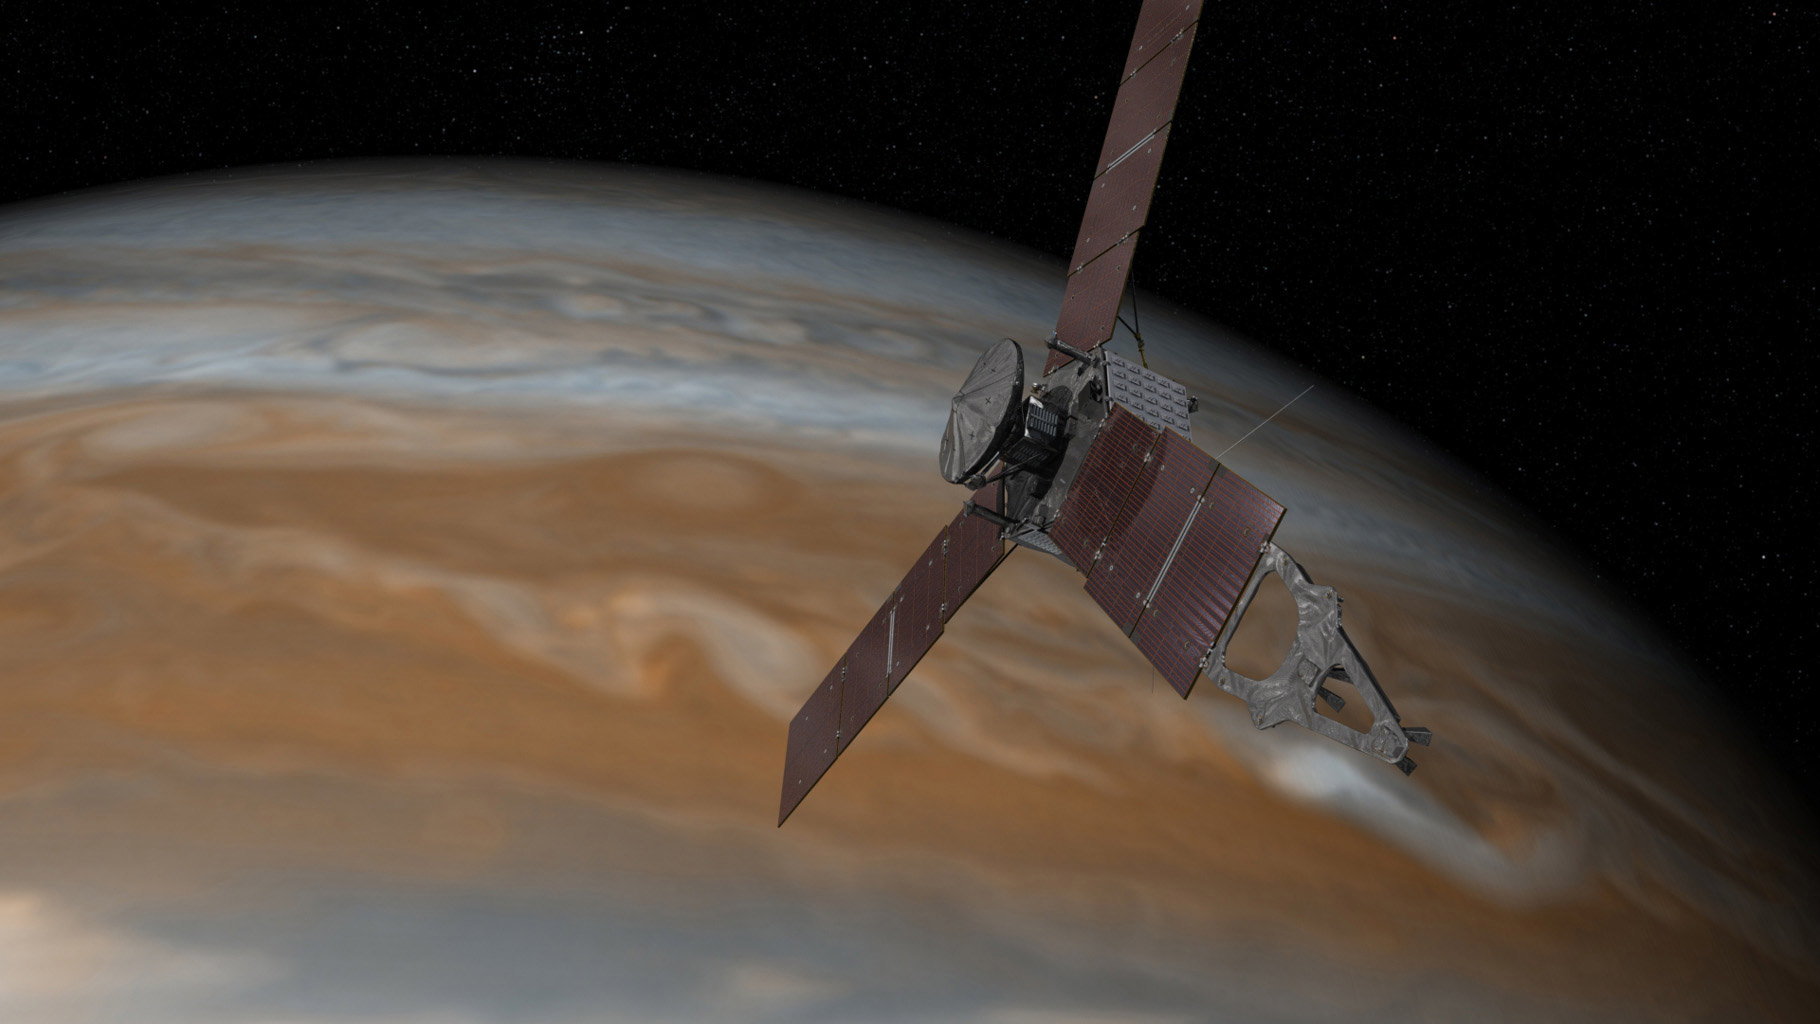 Le système d'exploitation temps réel VxWorks de Wind River a permis à la Nasa d'approcher la sonde&nbsp;Juno au plus près de Jupiter cinquième planète à partir du soleil. Le RTOS &nbsp;a servi dans le cadre d'opérations critiques de guidage, de navigation, de transfert de données, de propulsion, de communication notamment. © Nasa, JPL